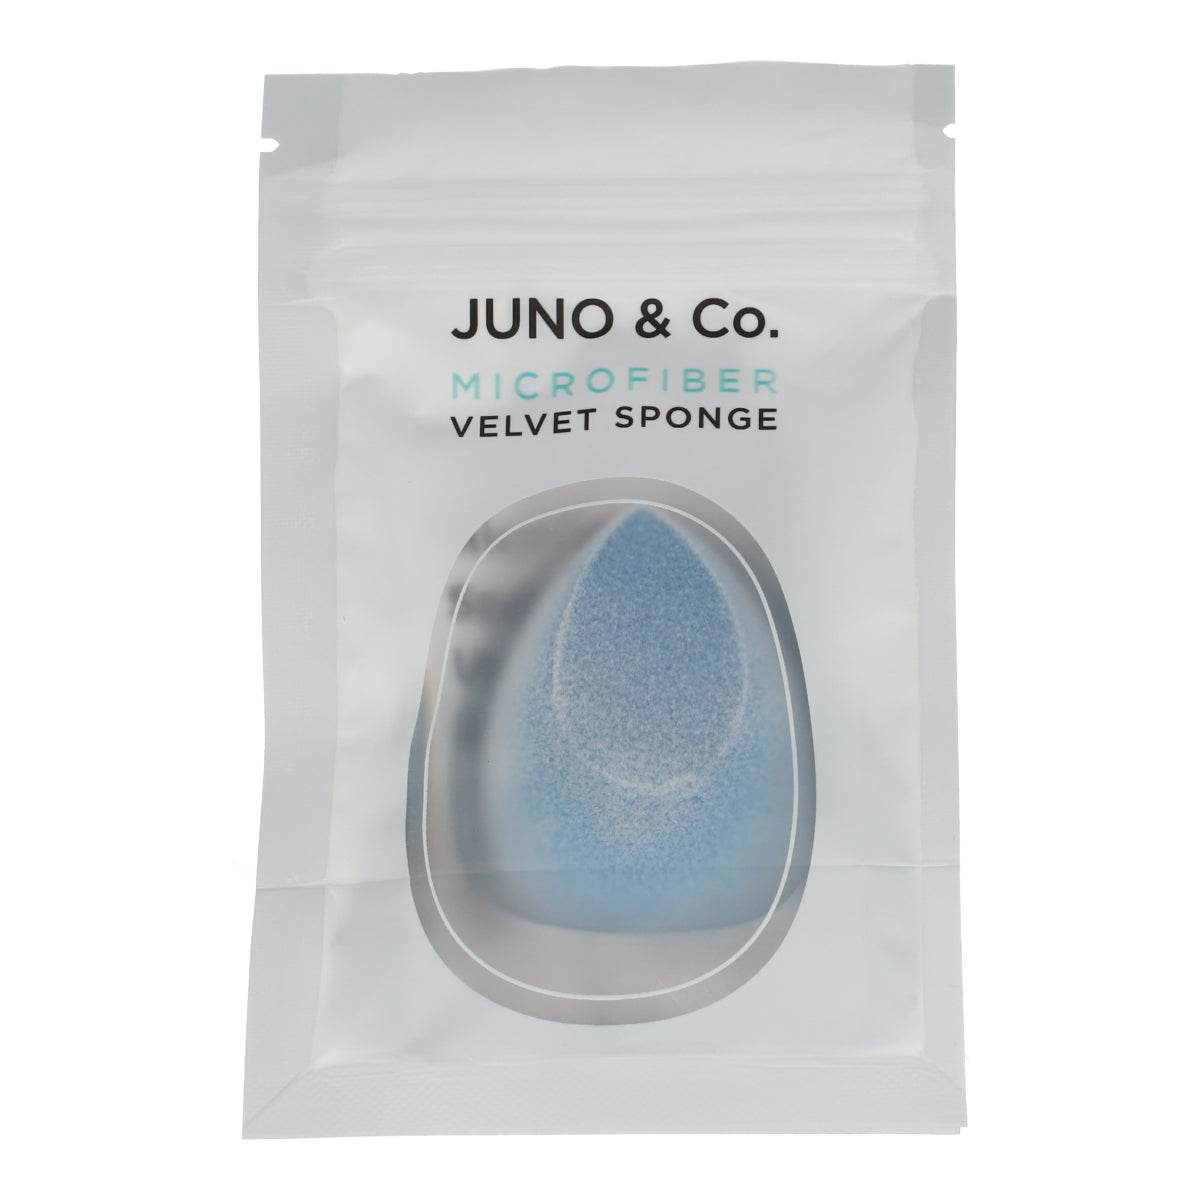 Microfiber Velvet Sponge Juno